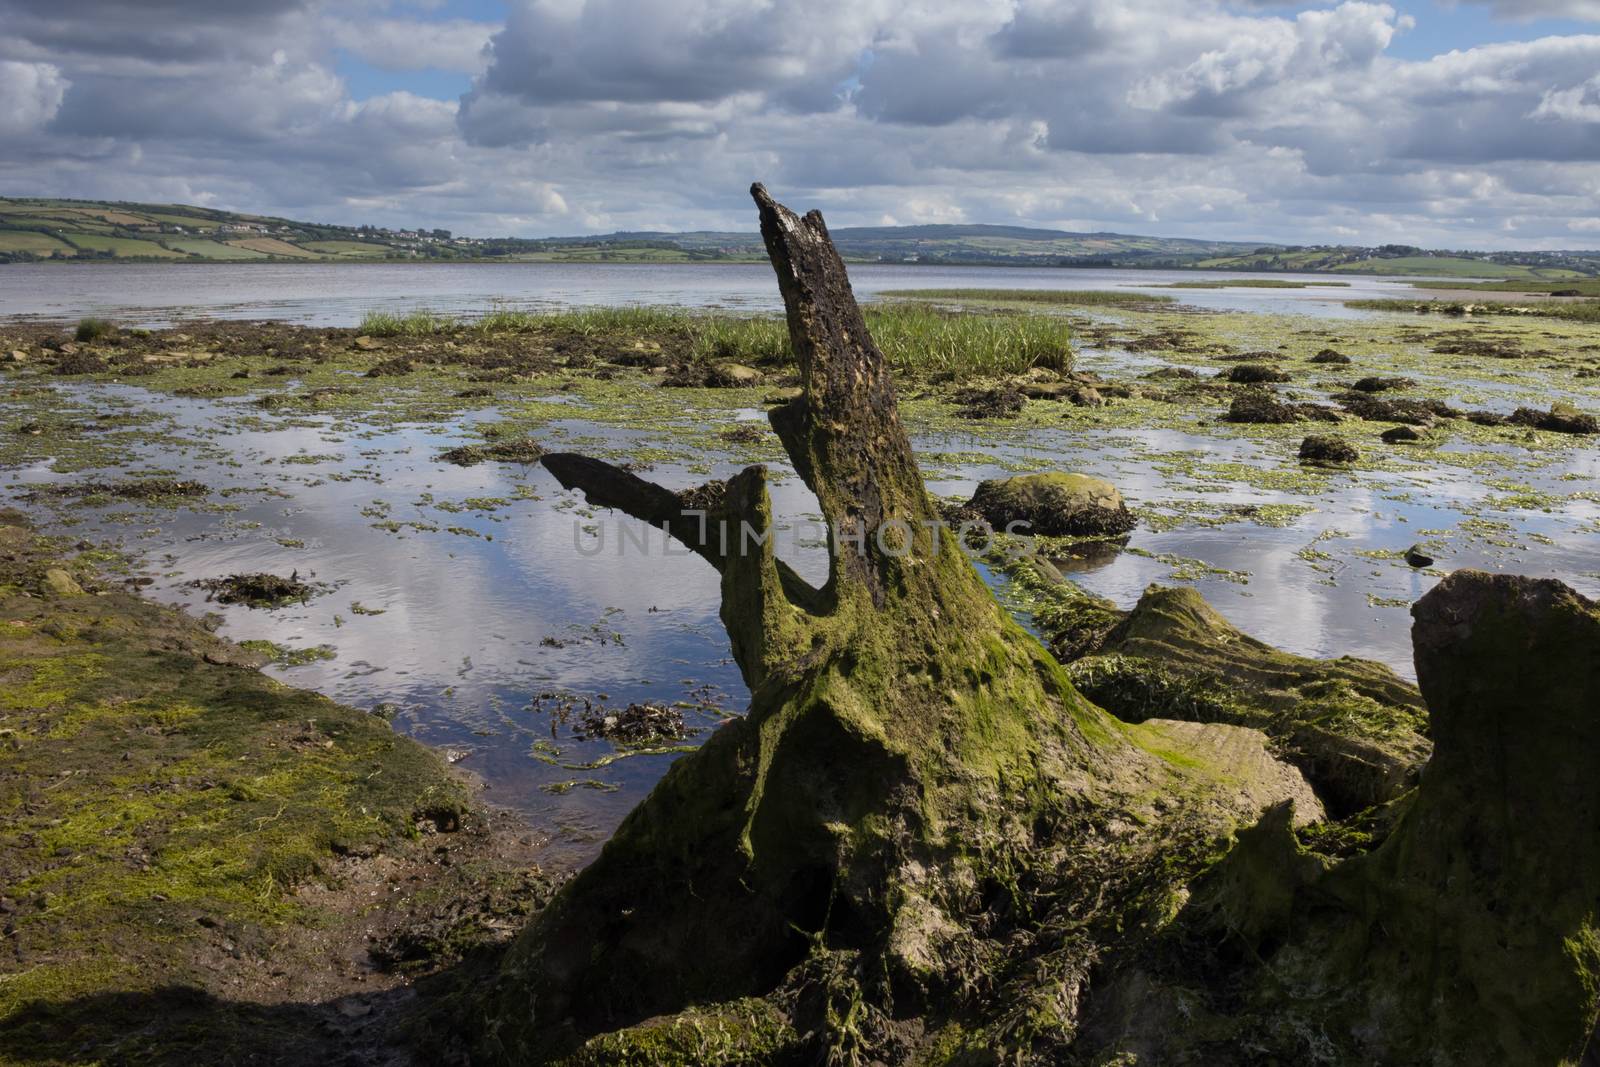 Remote wetland in Ireland